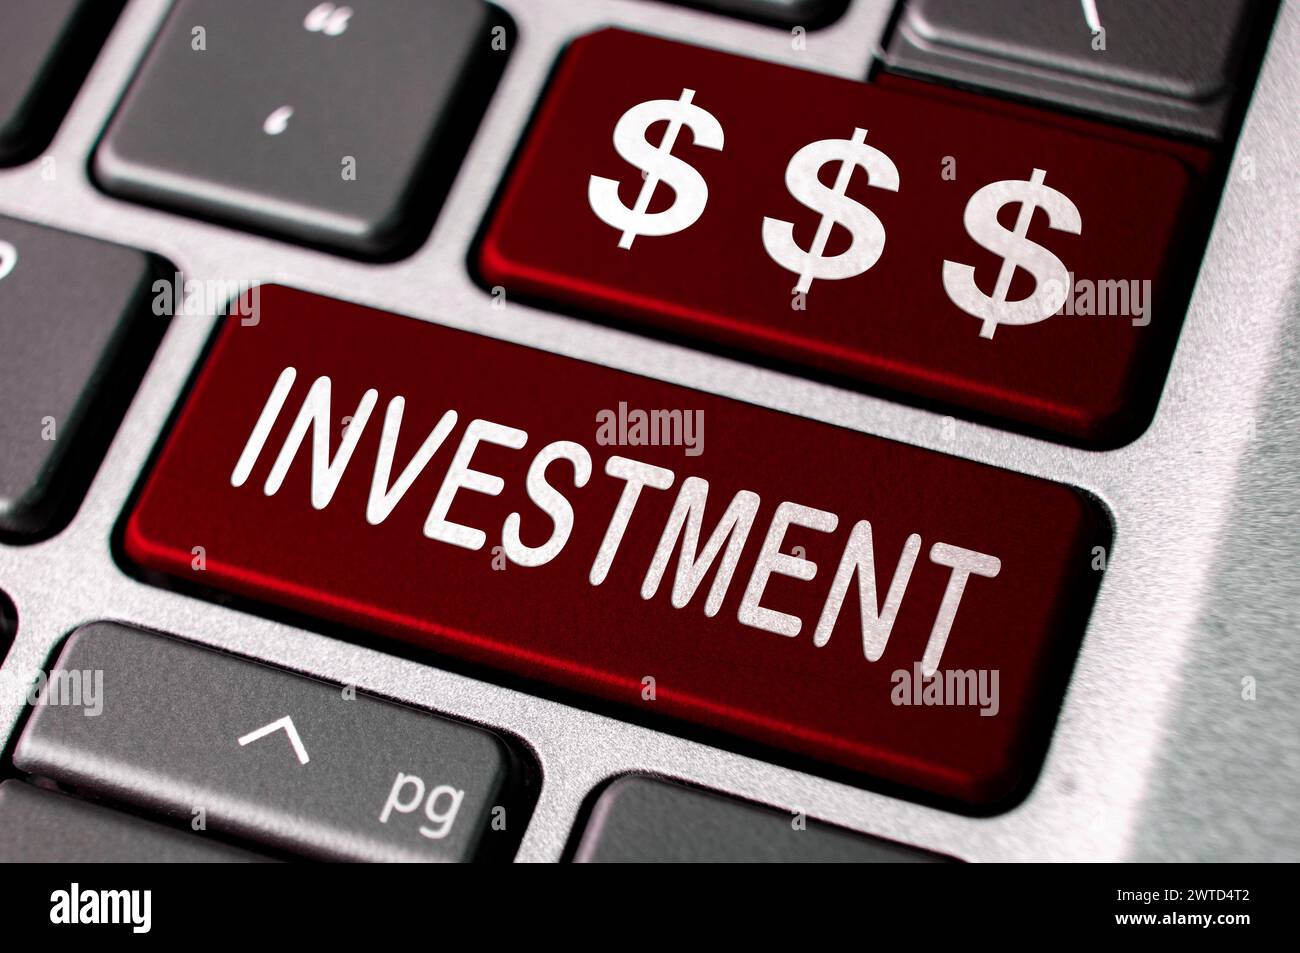 Testo dell'investimento e simbolo del dollaro sulle tastiere rosse dei notebook. Concetto di investimento aziendale. Foto Stock